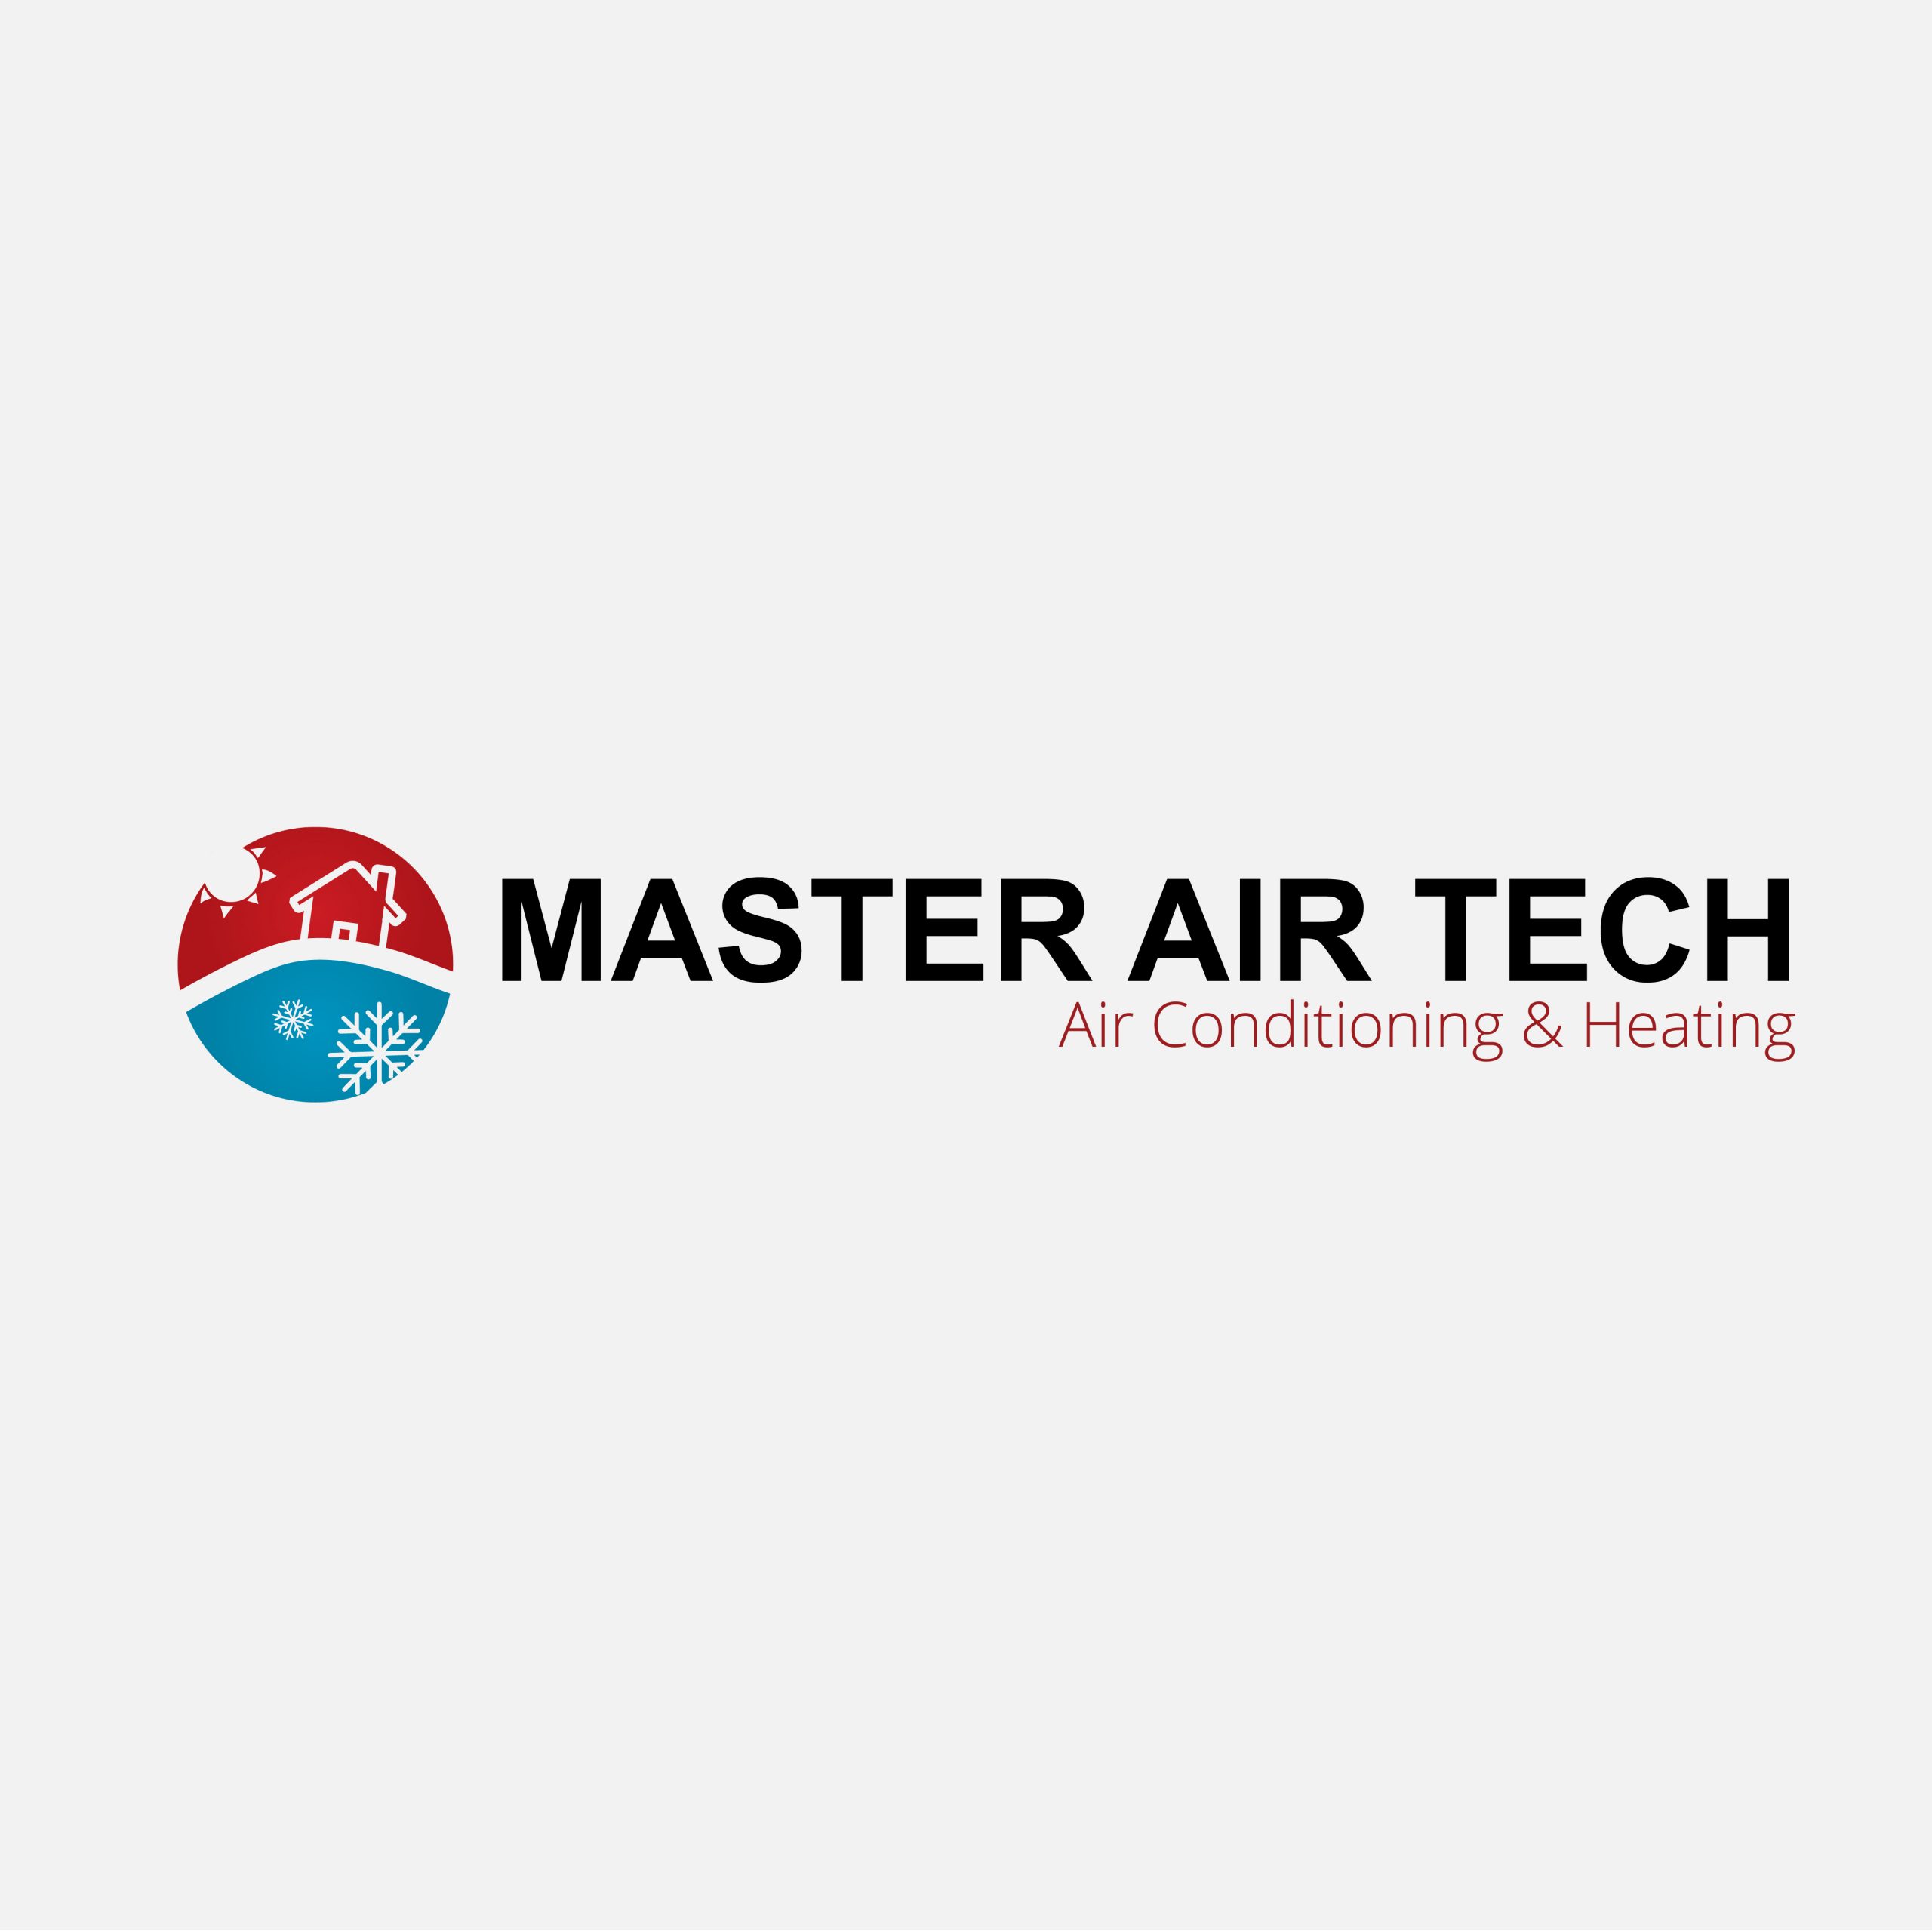 Master Air Tech Logo Design